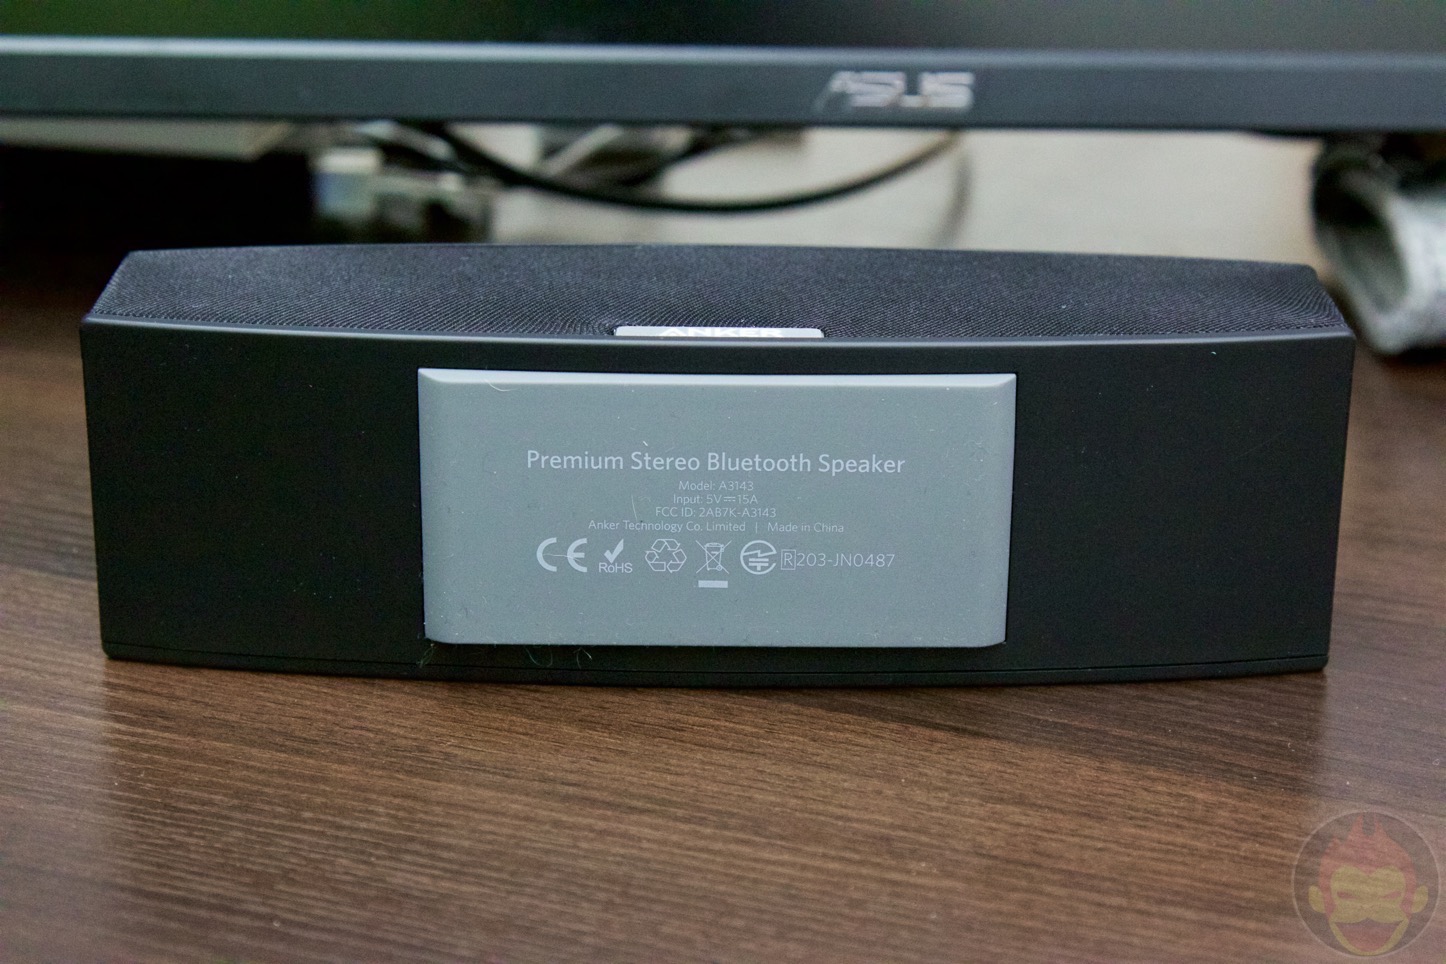 Anker-Premium-Stereo-Bluetooth-Speaker-14.jpg